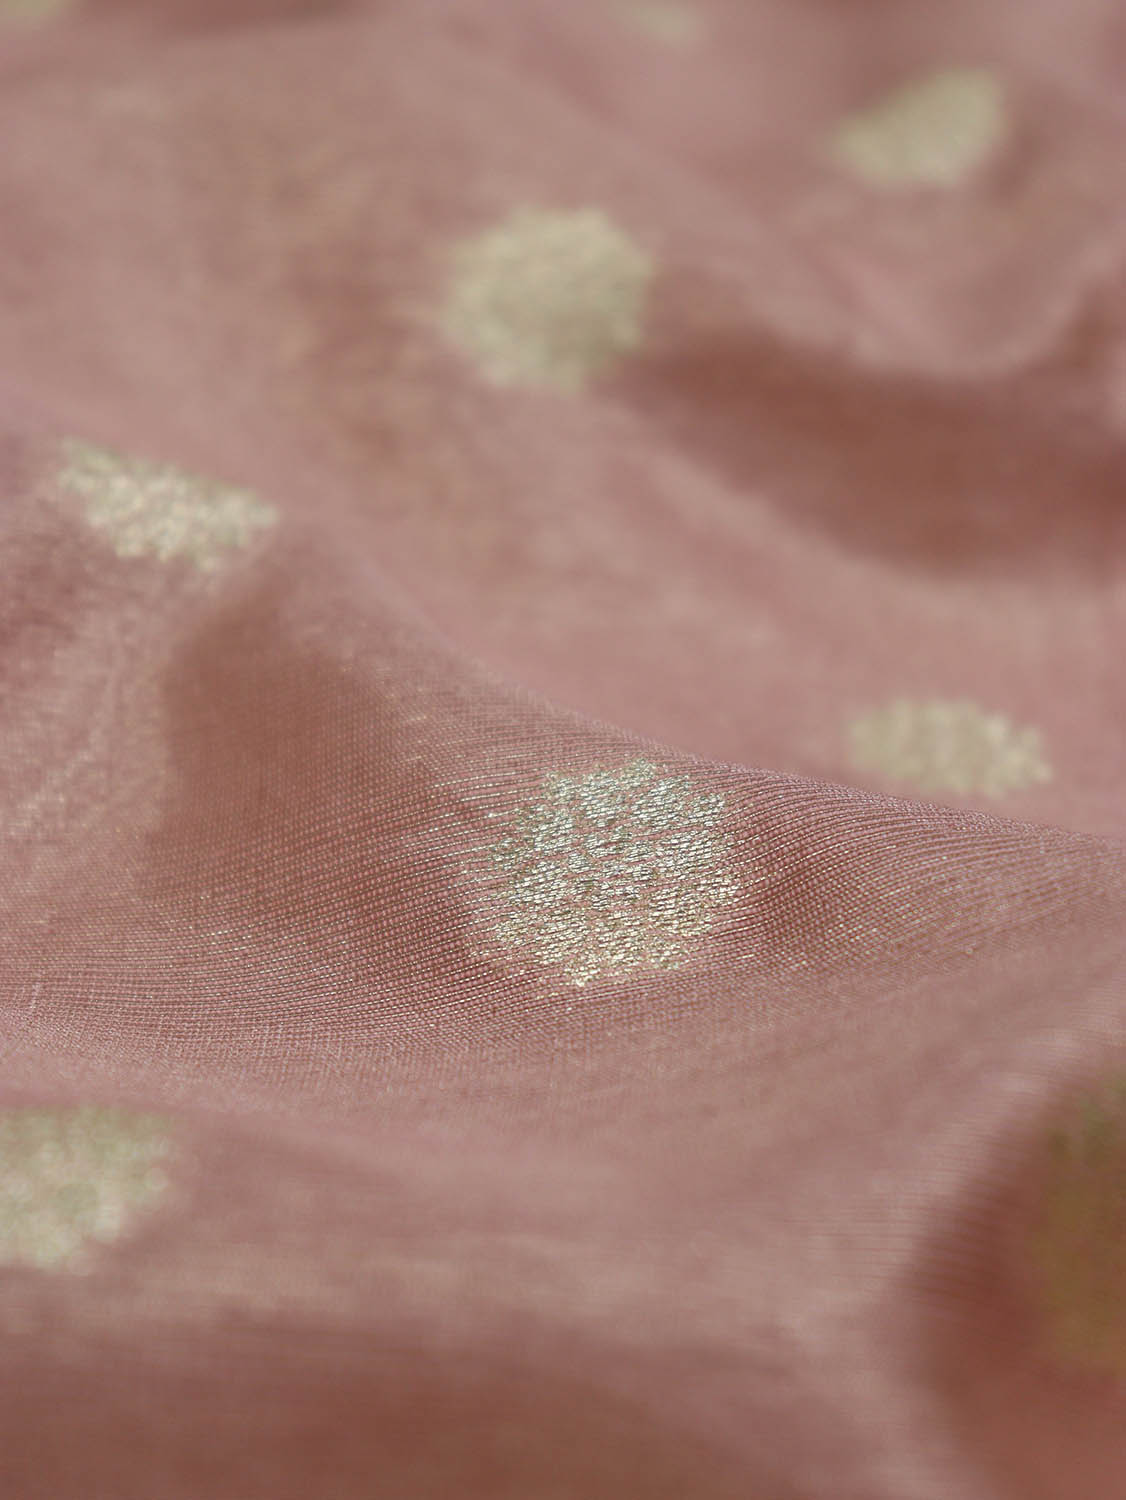 Exquisite Pink Banarasi Tissue Silk Fabric with Zari Booti Design (1 Mtr) - Luxurion World